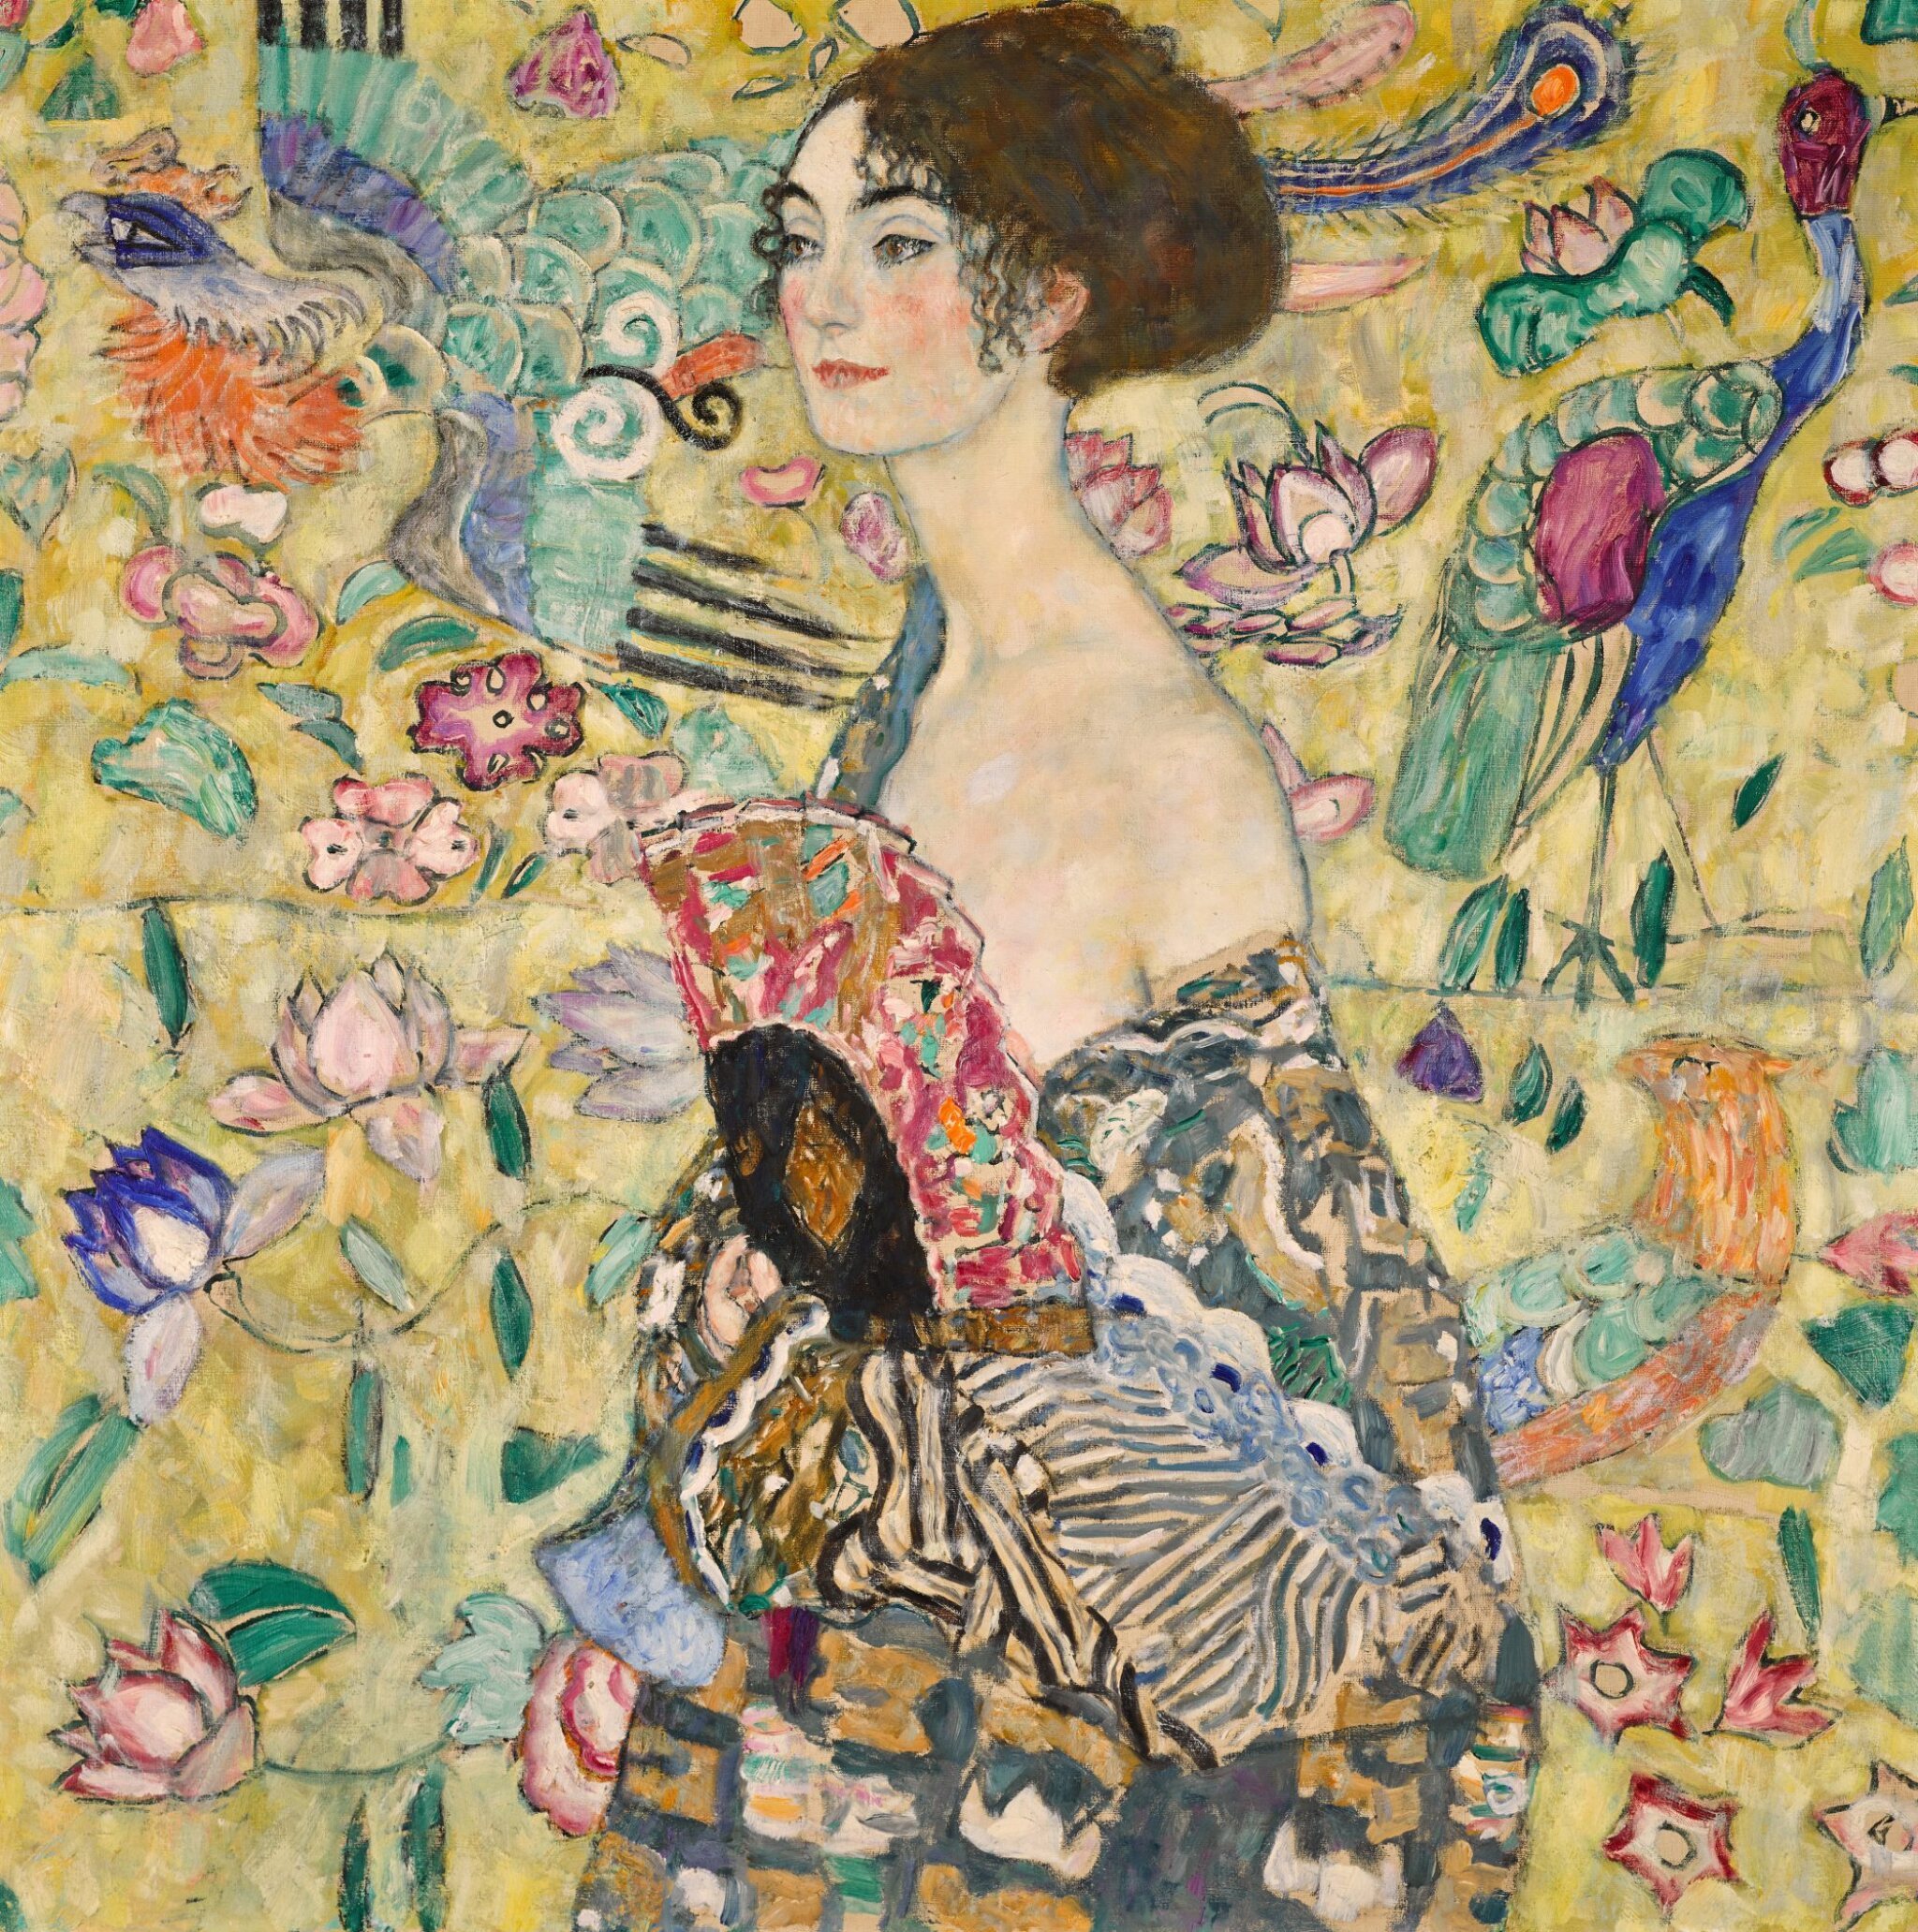 Doamna cu evantai by Gustav Klimt - 1917-1918 - 100,2 x 100,2 cm 